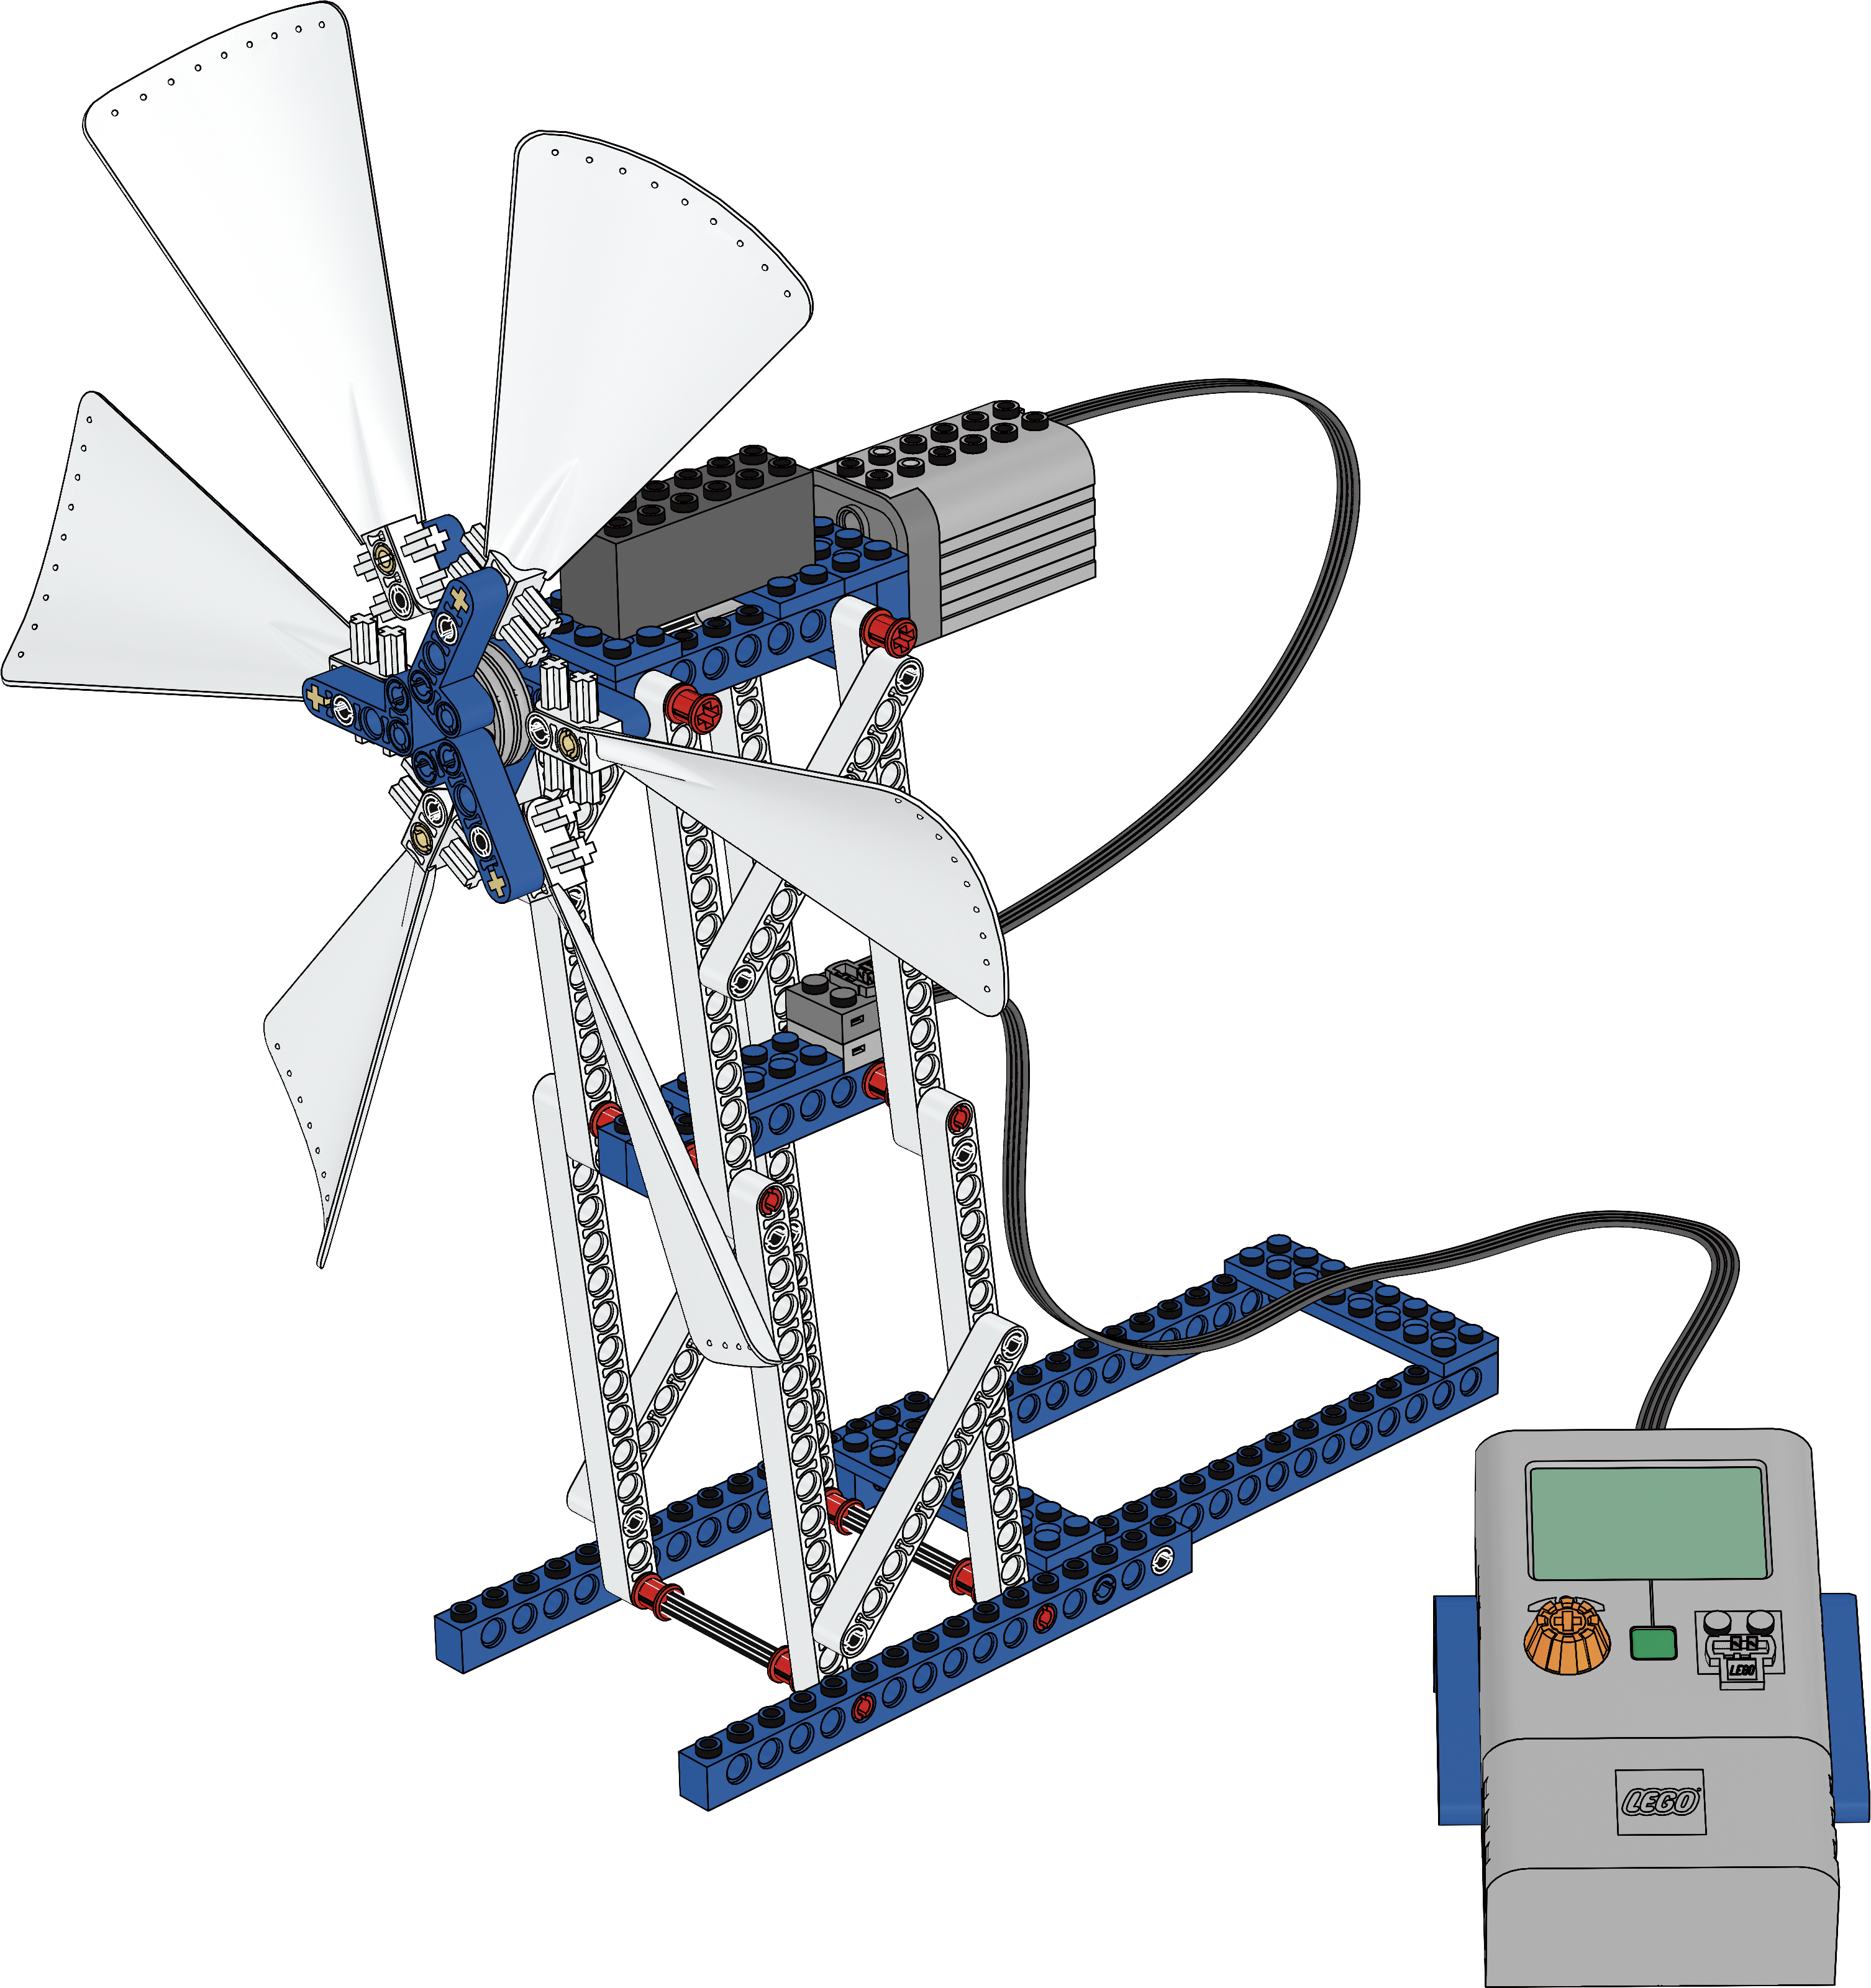 lego education windmill